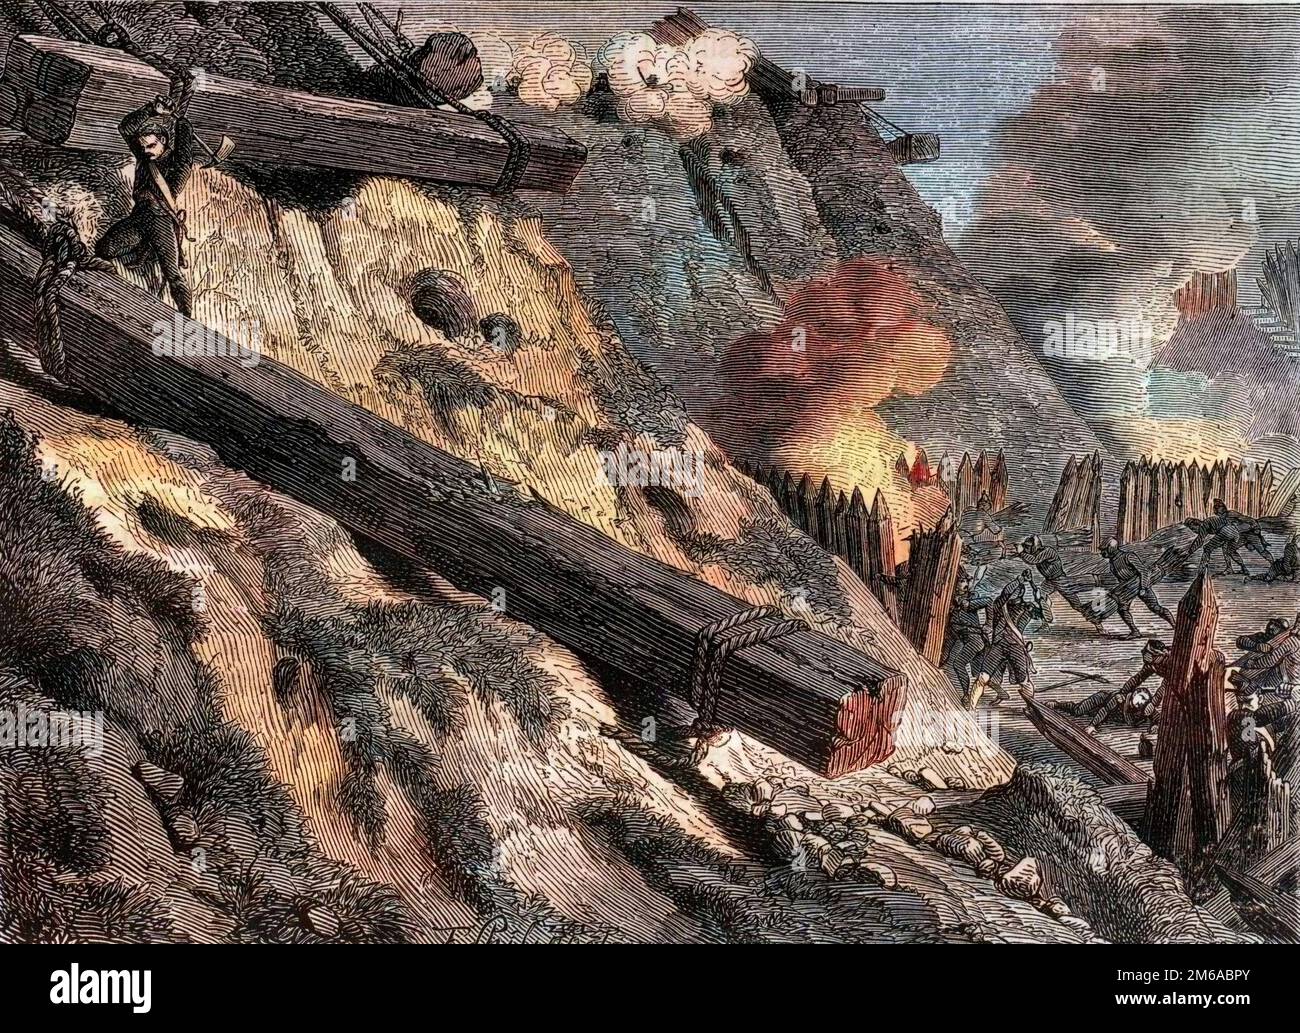 Le siege de Dantzig (actuelle Gdansk) le 19 mars 1807 Pendant la guerre de la quatrieme Coalition - Acte d'heroisme du chasseur Francois Valle durant le siege de Dantzig -1879 Stockfoto